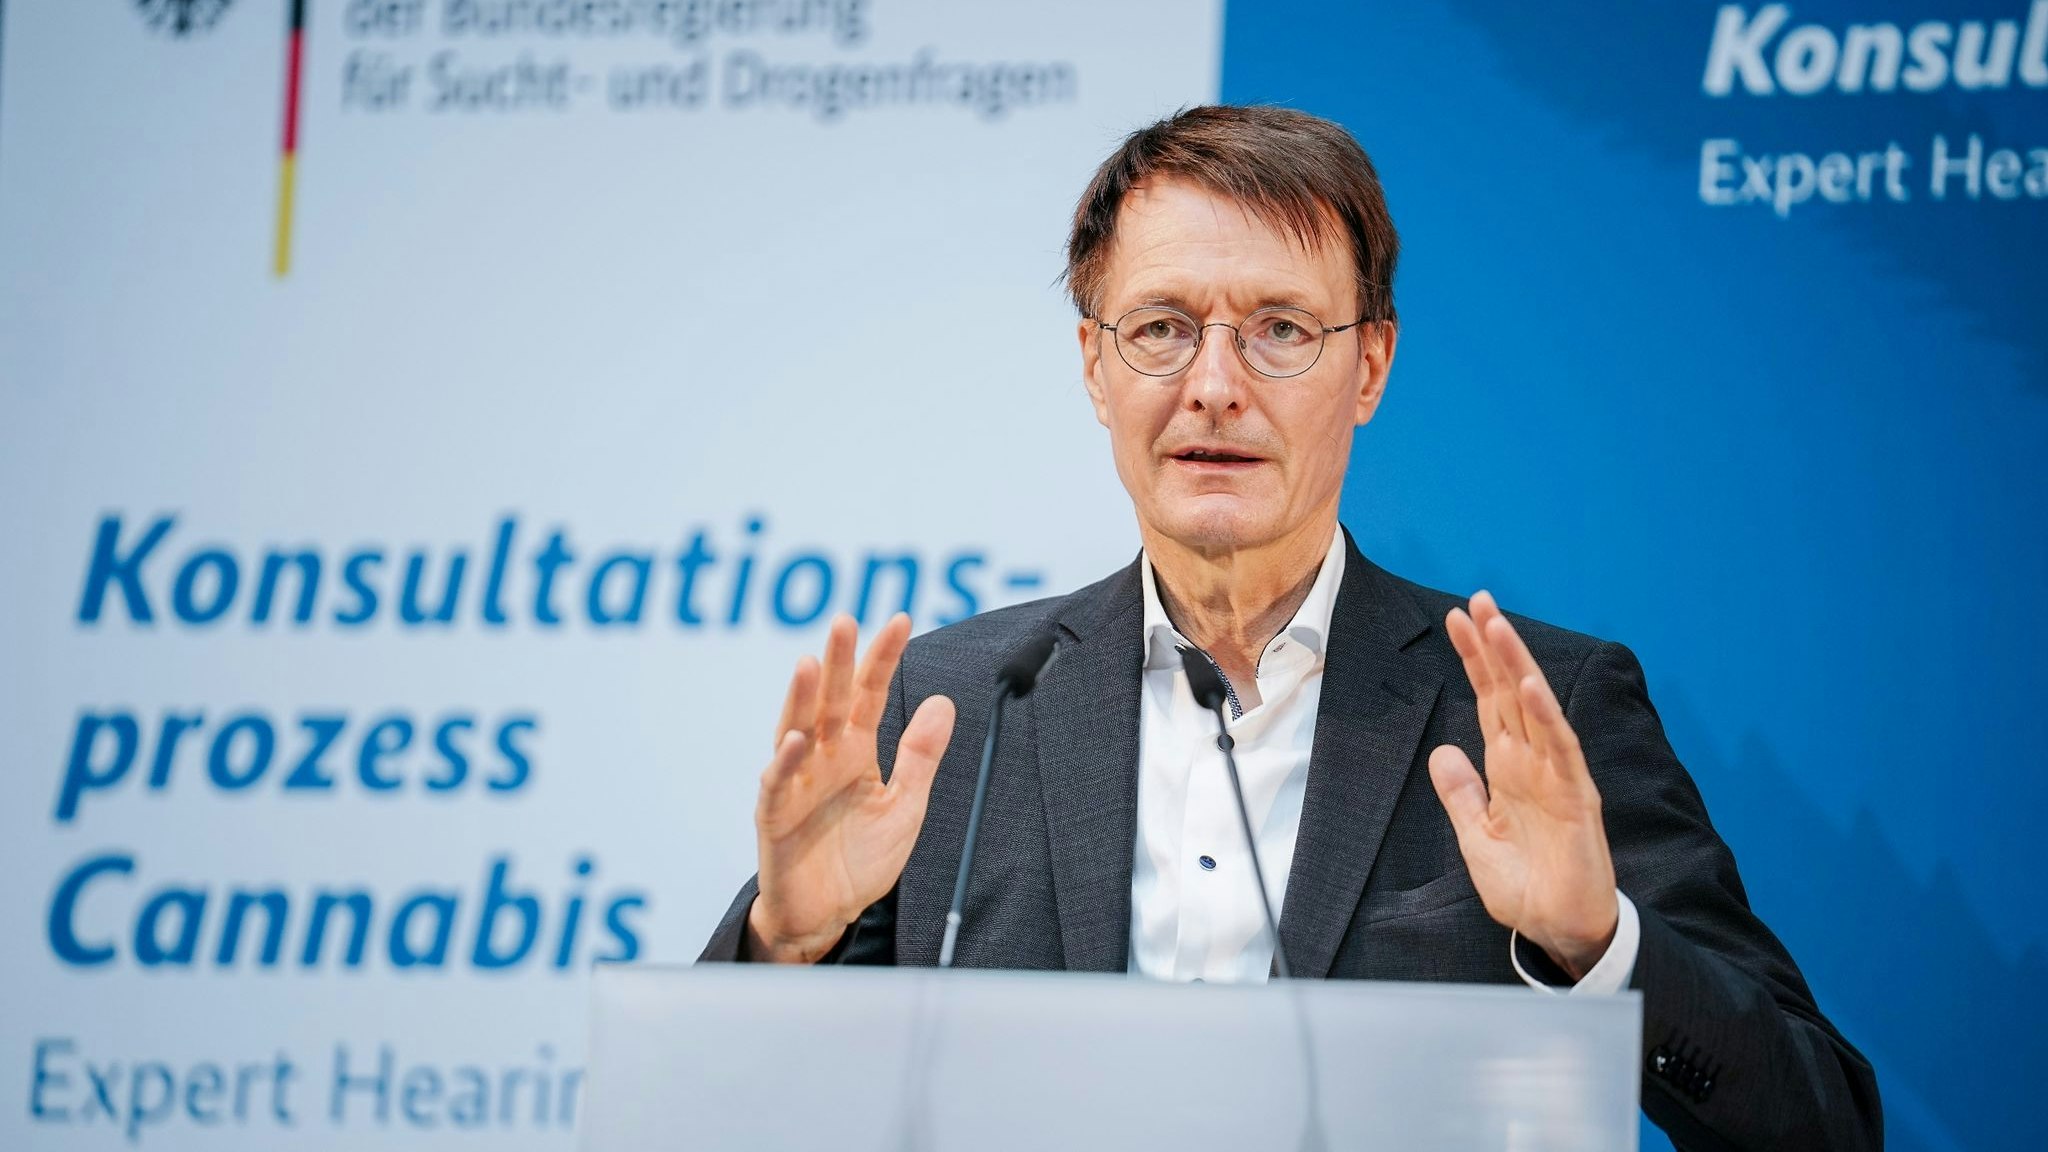 Gesundheitsminister Karl Lauterbach bei der Expertenanhörung zur Vorbereitung der geplanten kontrollierten Abgabe von Cannabis an Erwachsene in Deutschland. Foto: dpa/Nietfeld